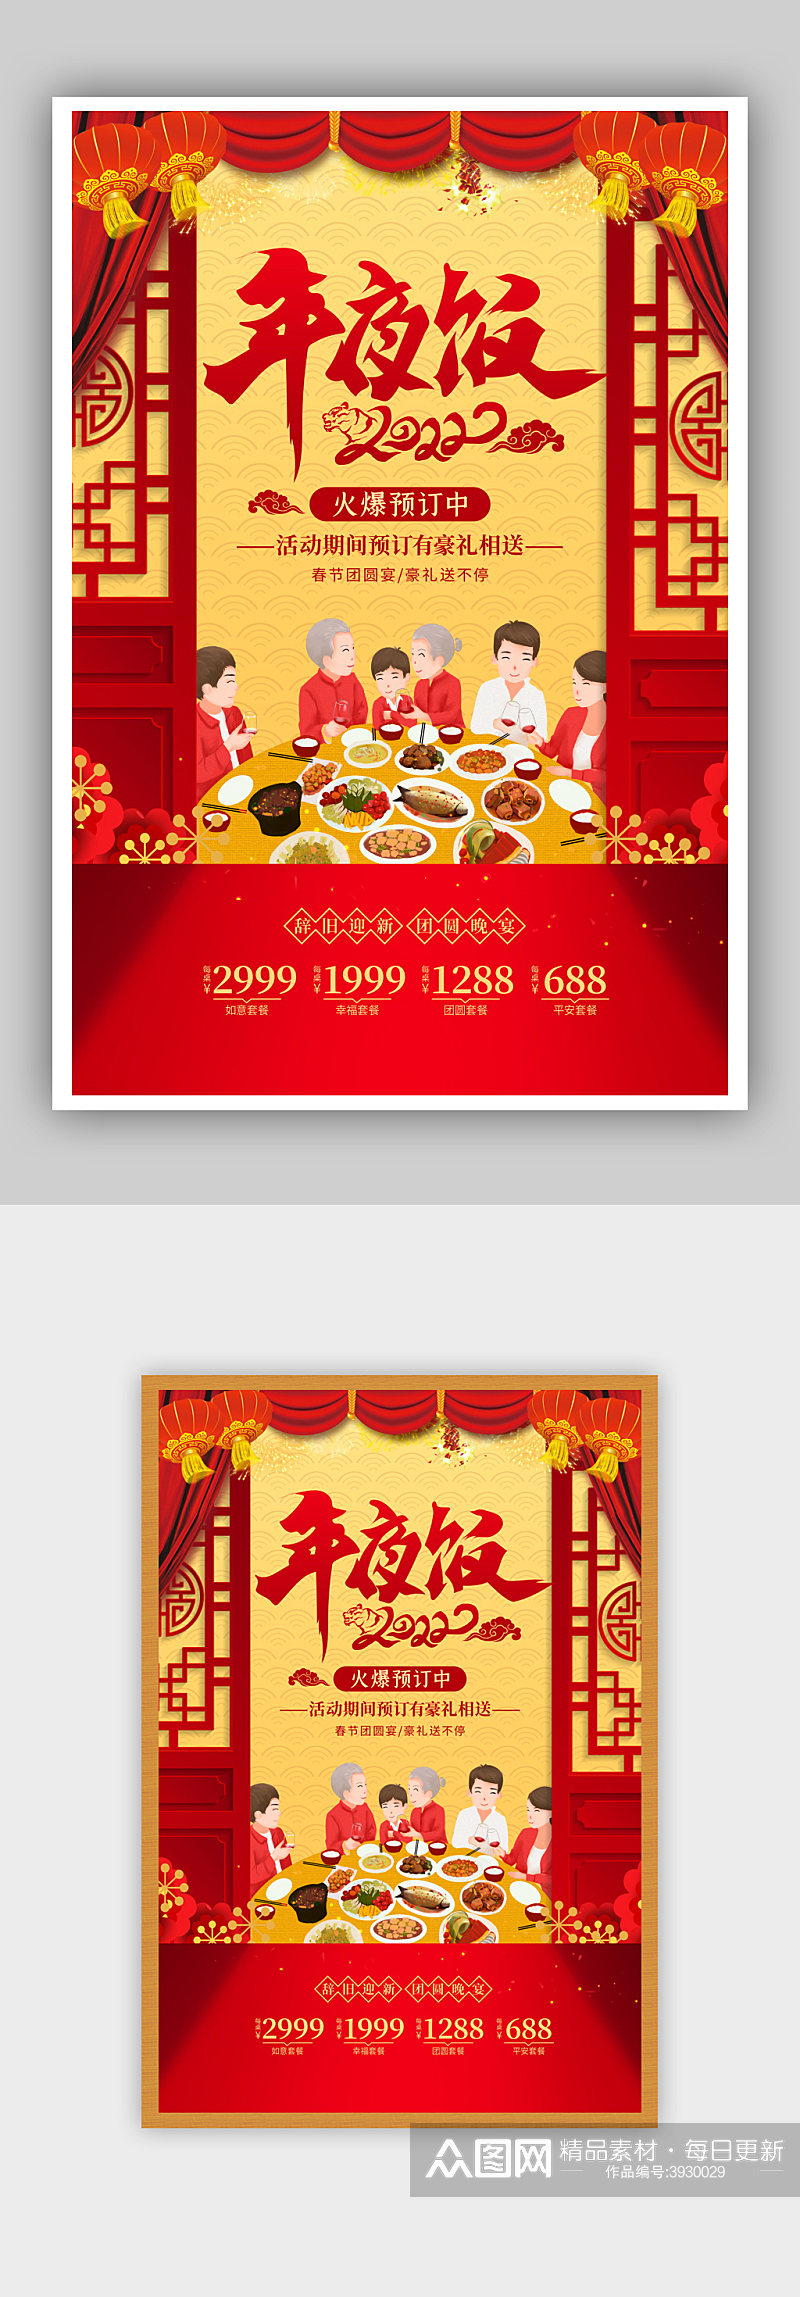 红色喜庆年夜饭预订宣传海报素材